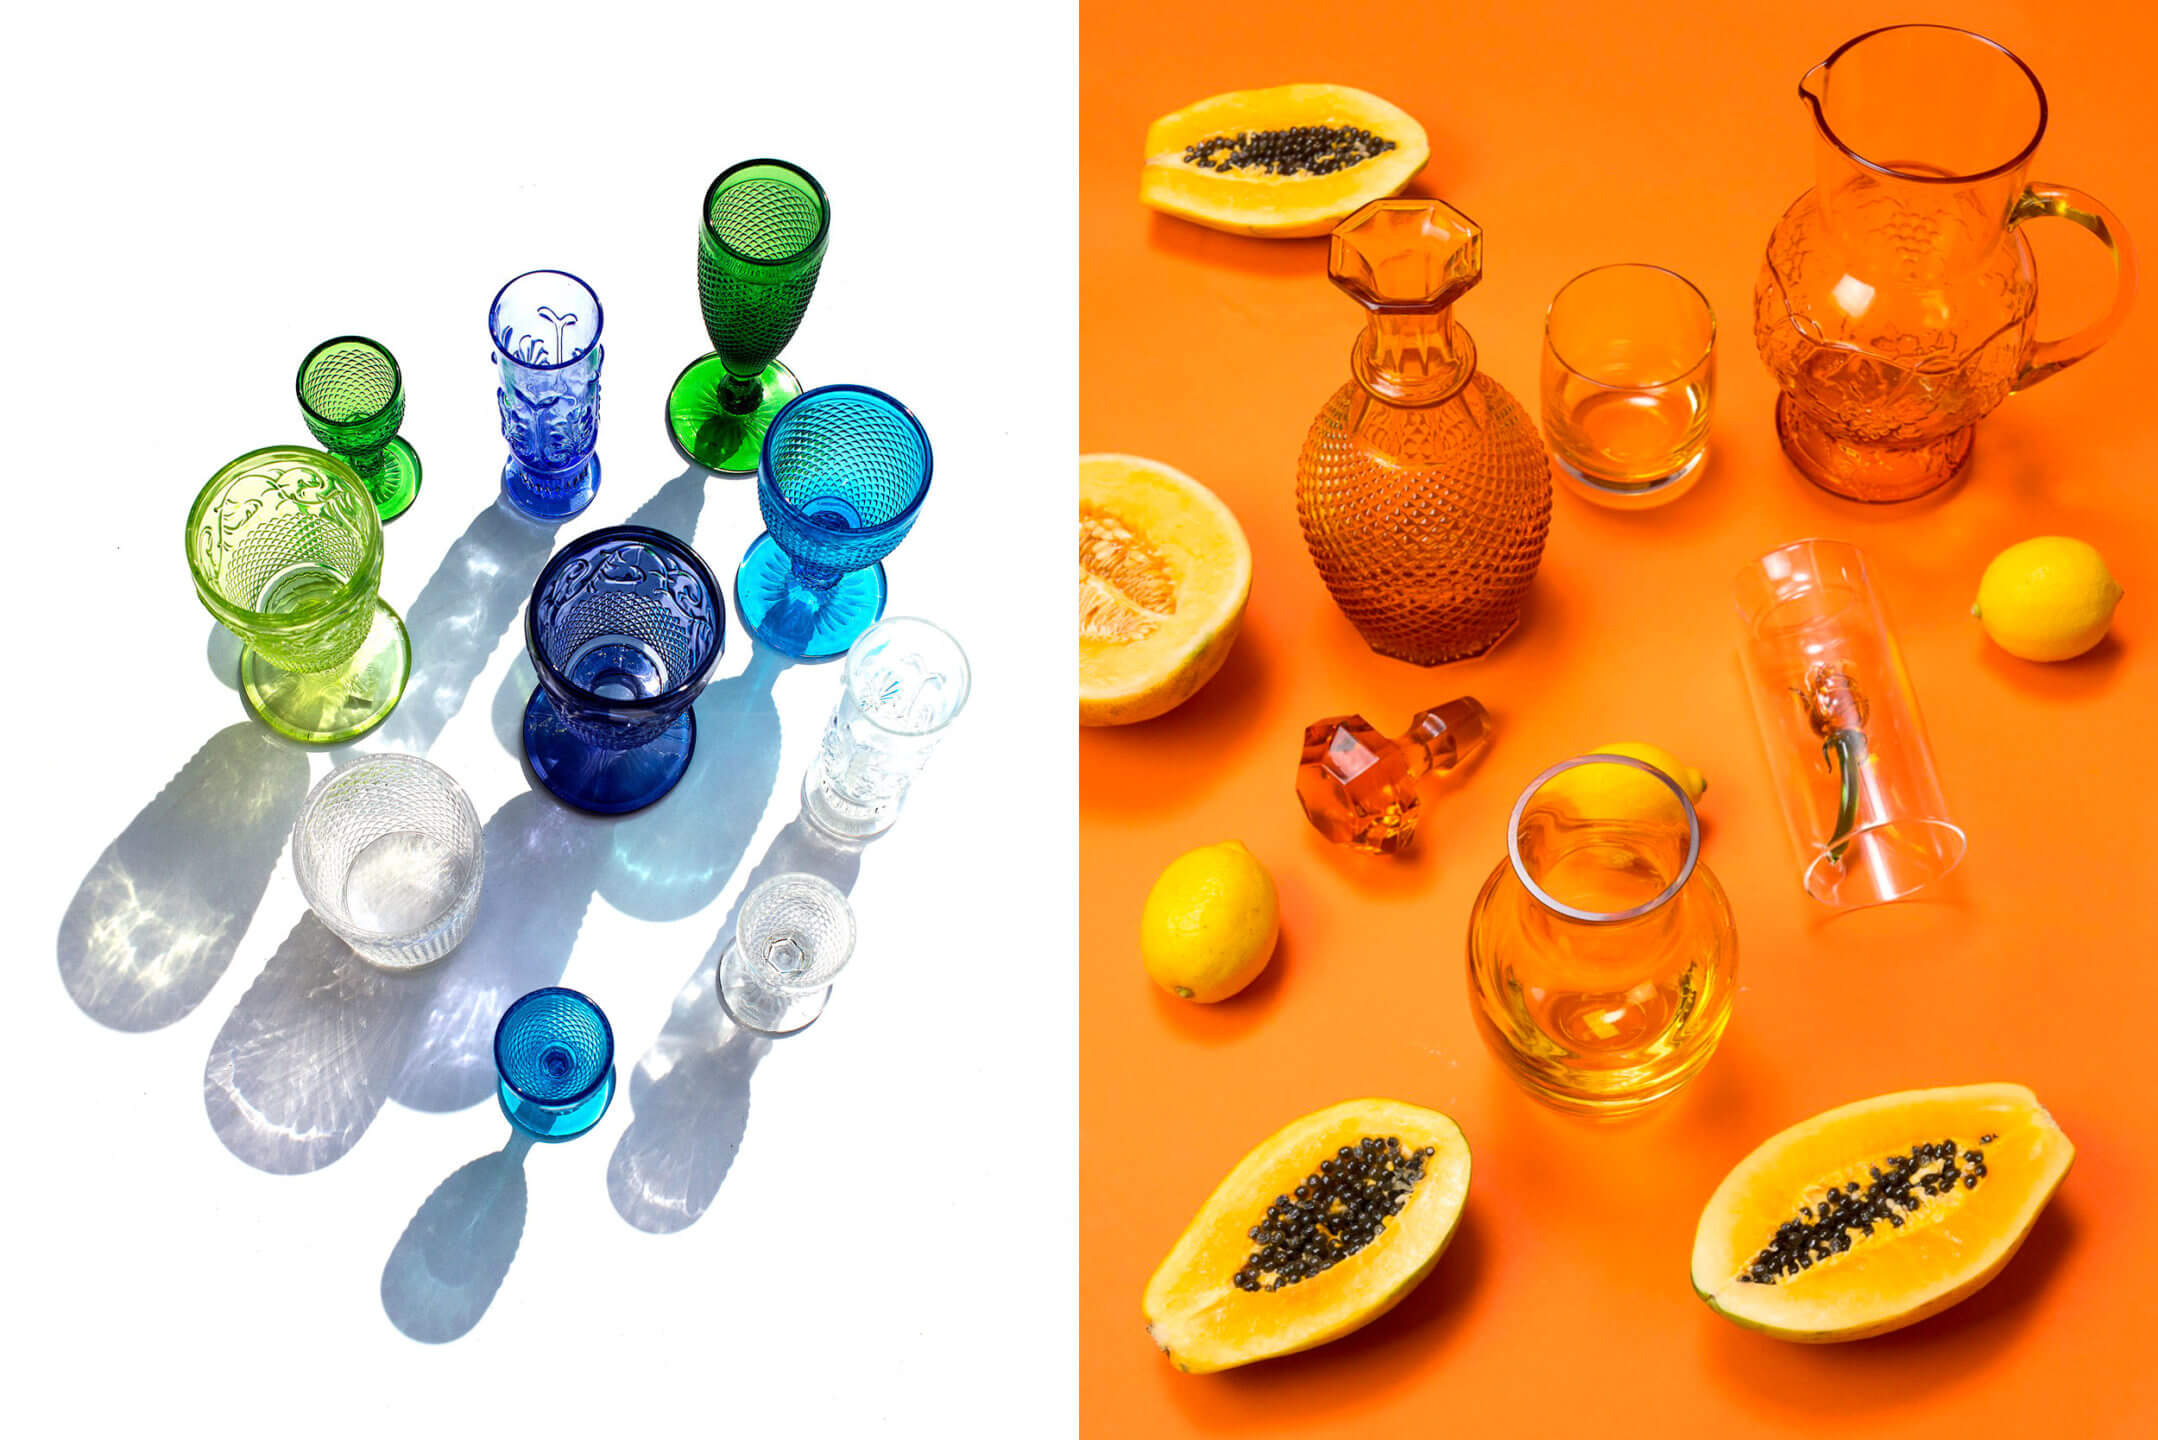 Colorful monochrome product photography for Portuguese glassware brand Vidro